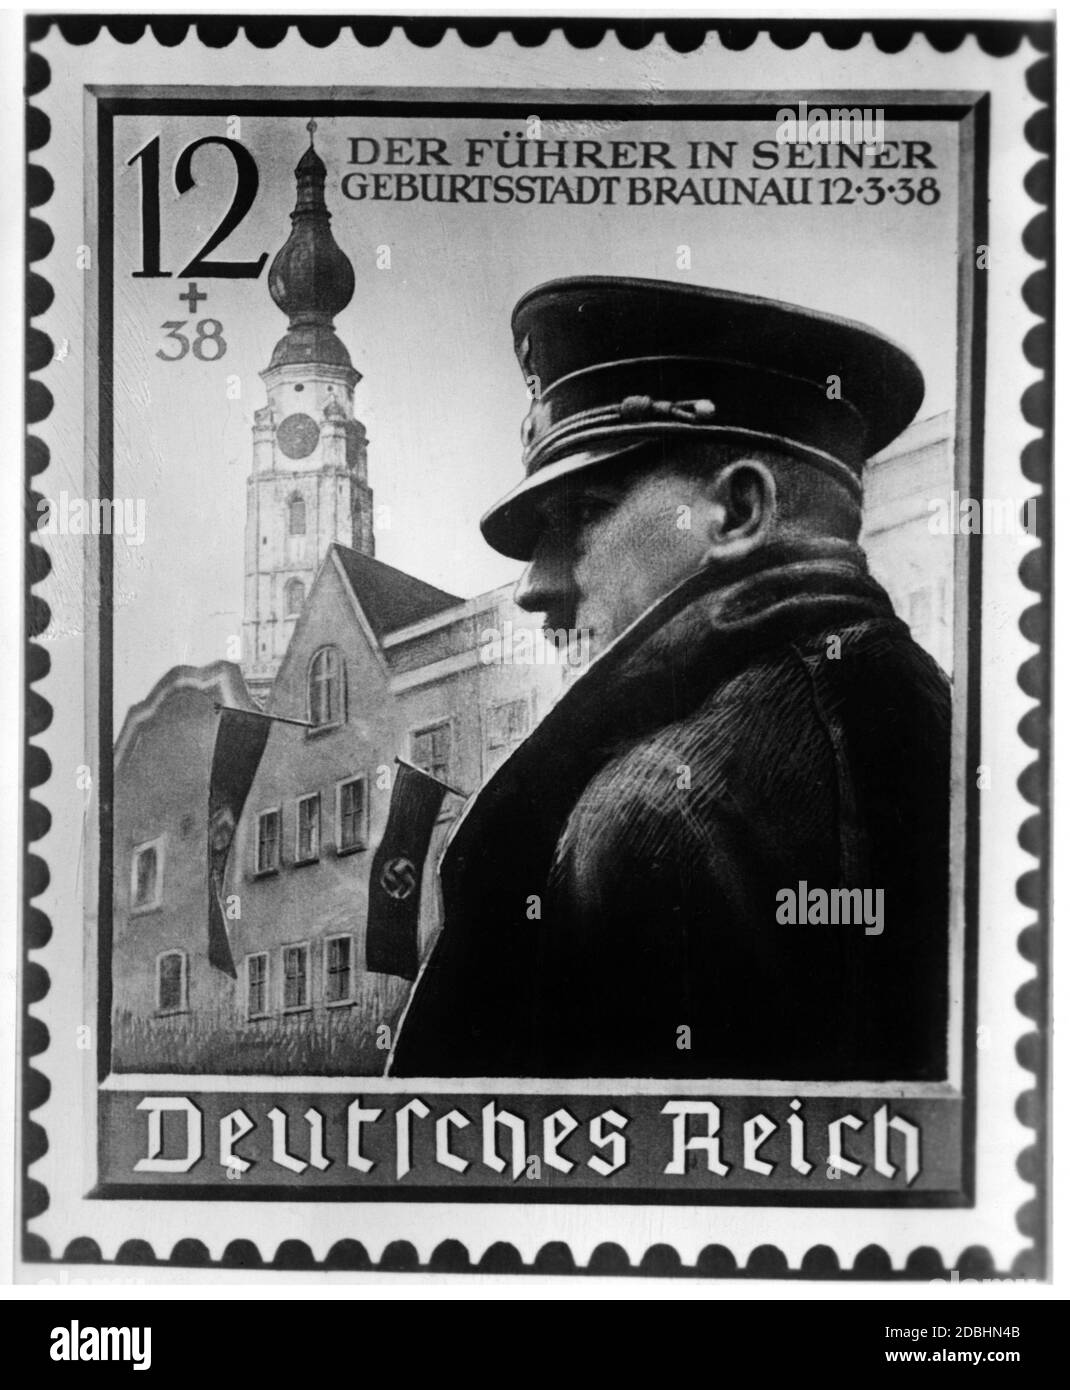 Adolf Hitler représentations dans l'art et la peinture. Ici illustré comme un motif de timbre avec une scène de Braunau. Valeur 12 + supplément 38 Pfennig. Banque D'Images